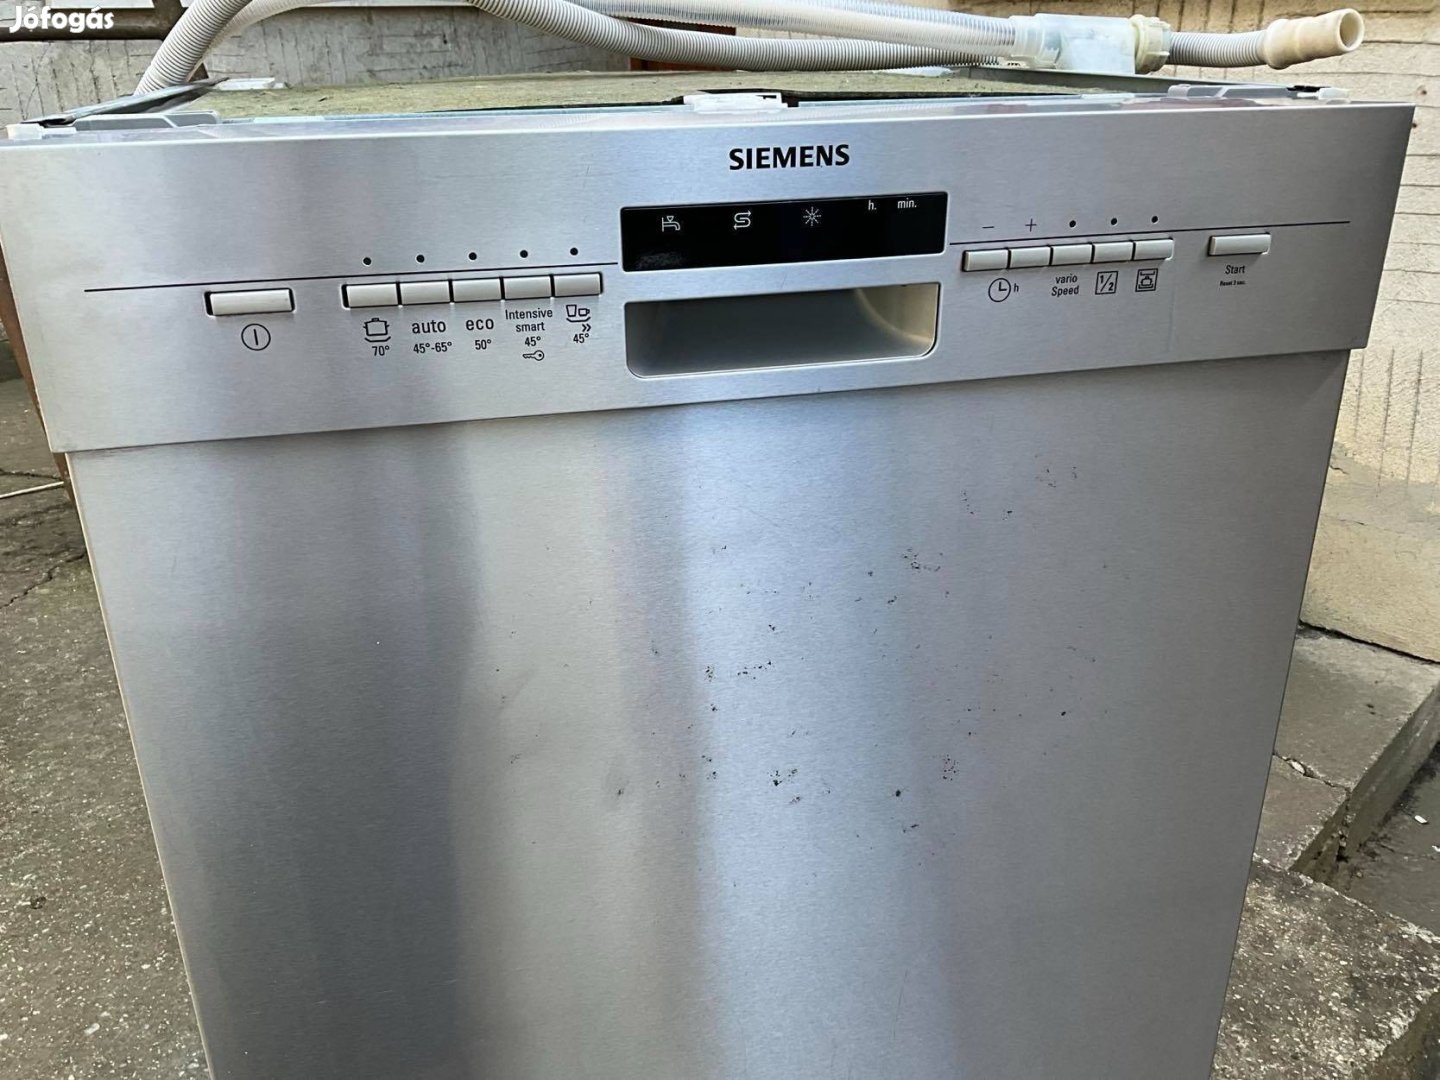 Siemens inoxajtós pult alá tehető mosogatógép 13 teritékes